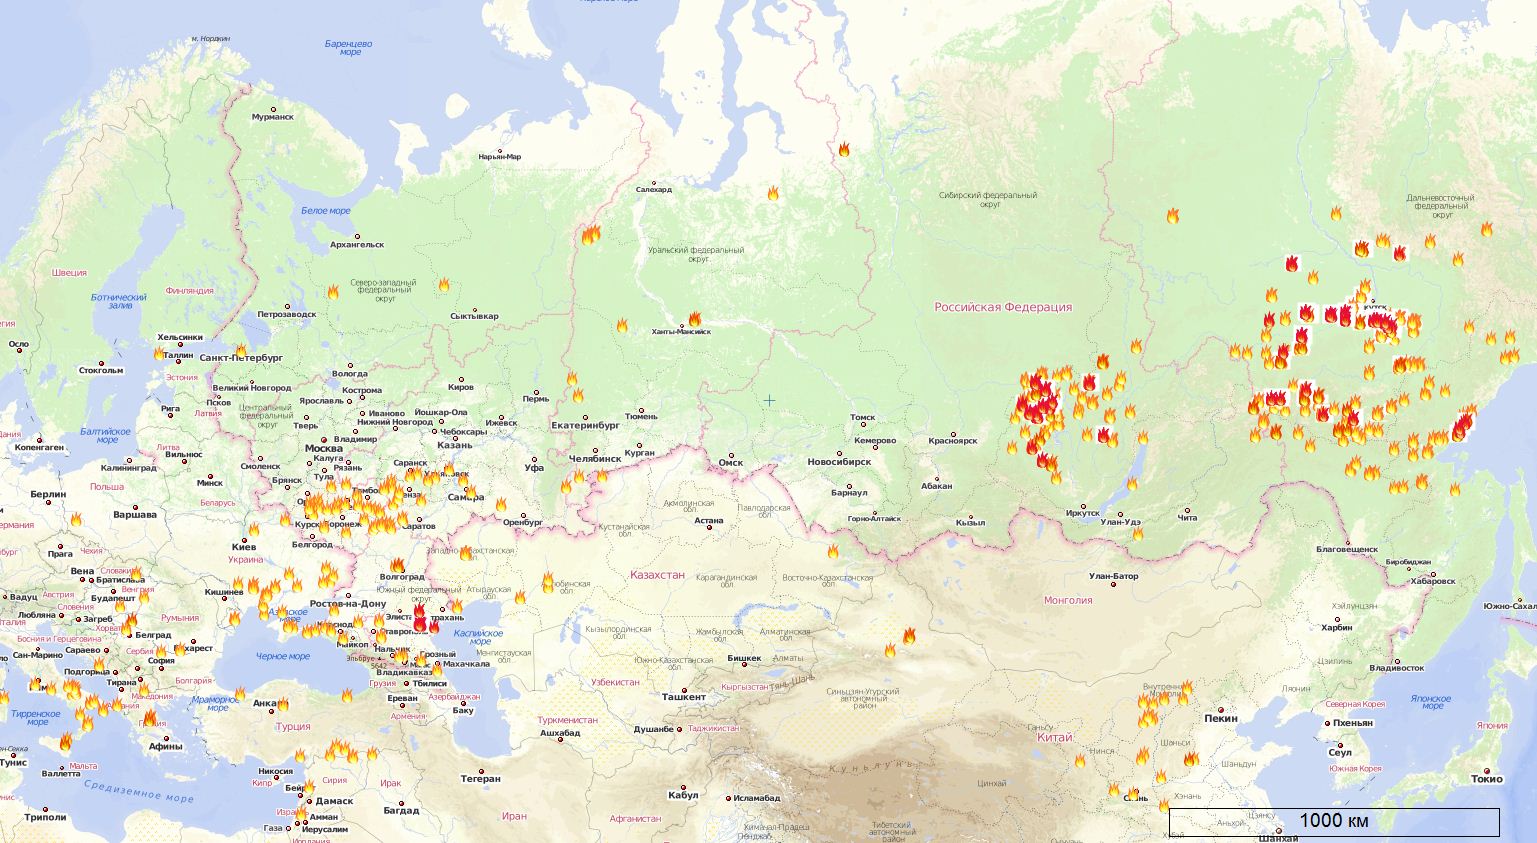 Карта лесных пожаров Россия, Украина, Европа, Азия на 14.07.2011